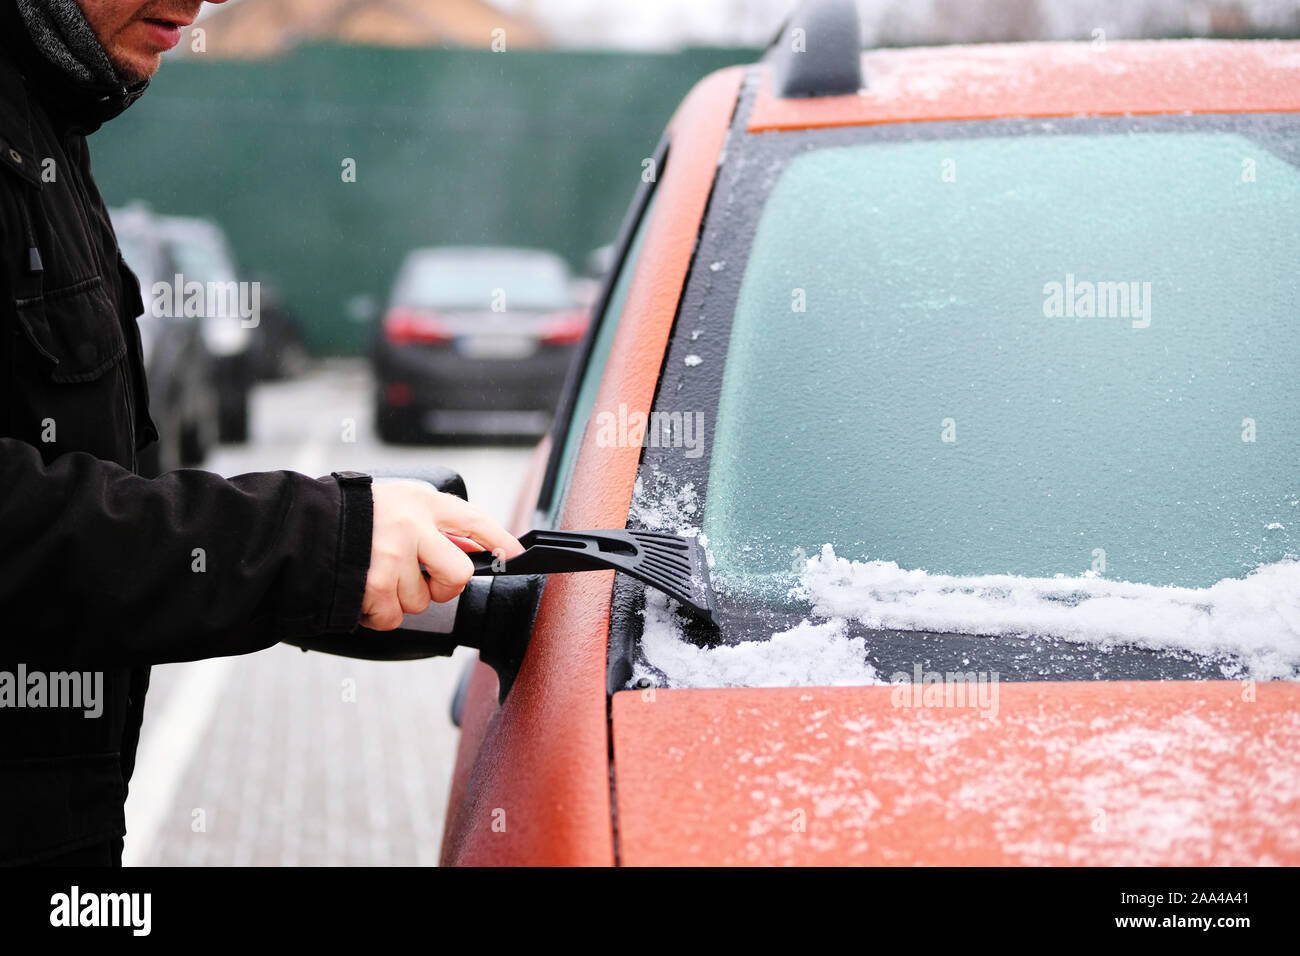 Efface l'homme de neige-glace glace de voiture. Le racloir en mans main. Fenêtre d'orange congelé de nettoyage automobile. Banque D'Images